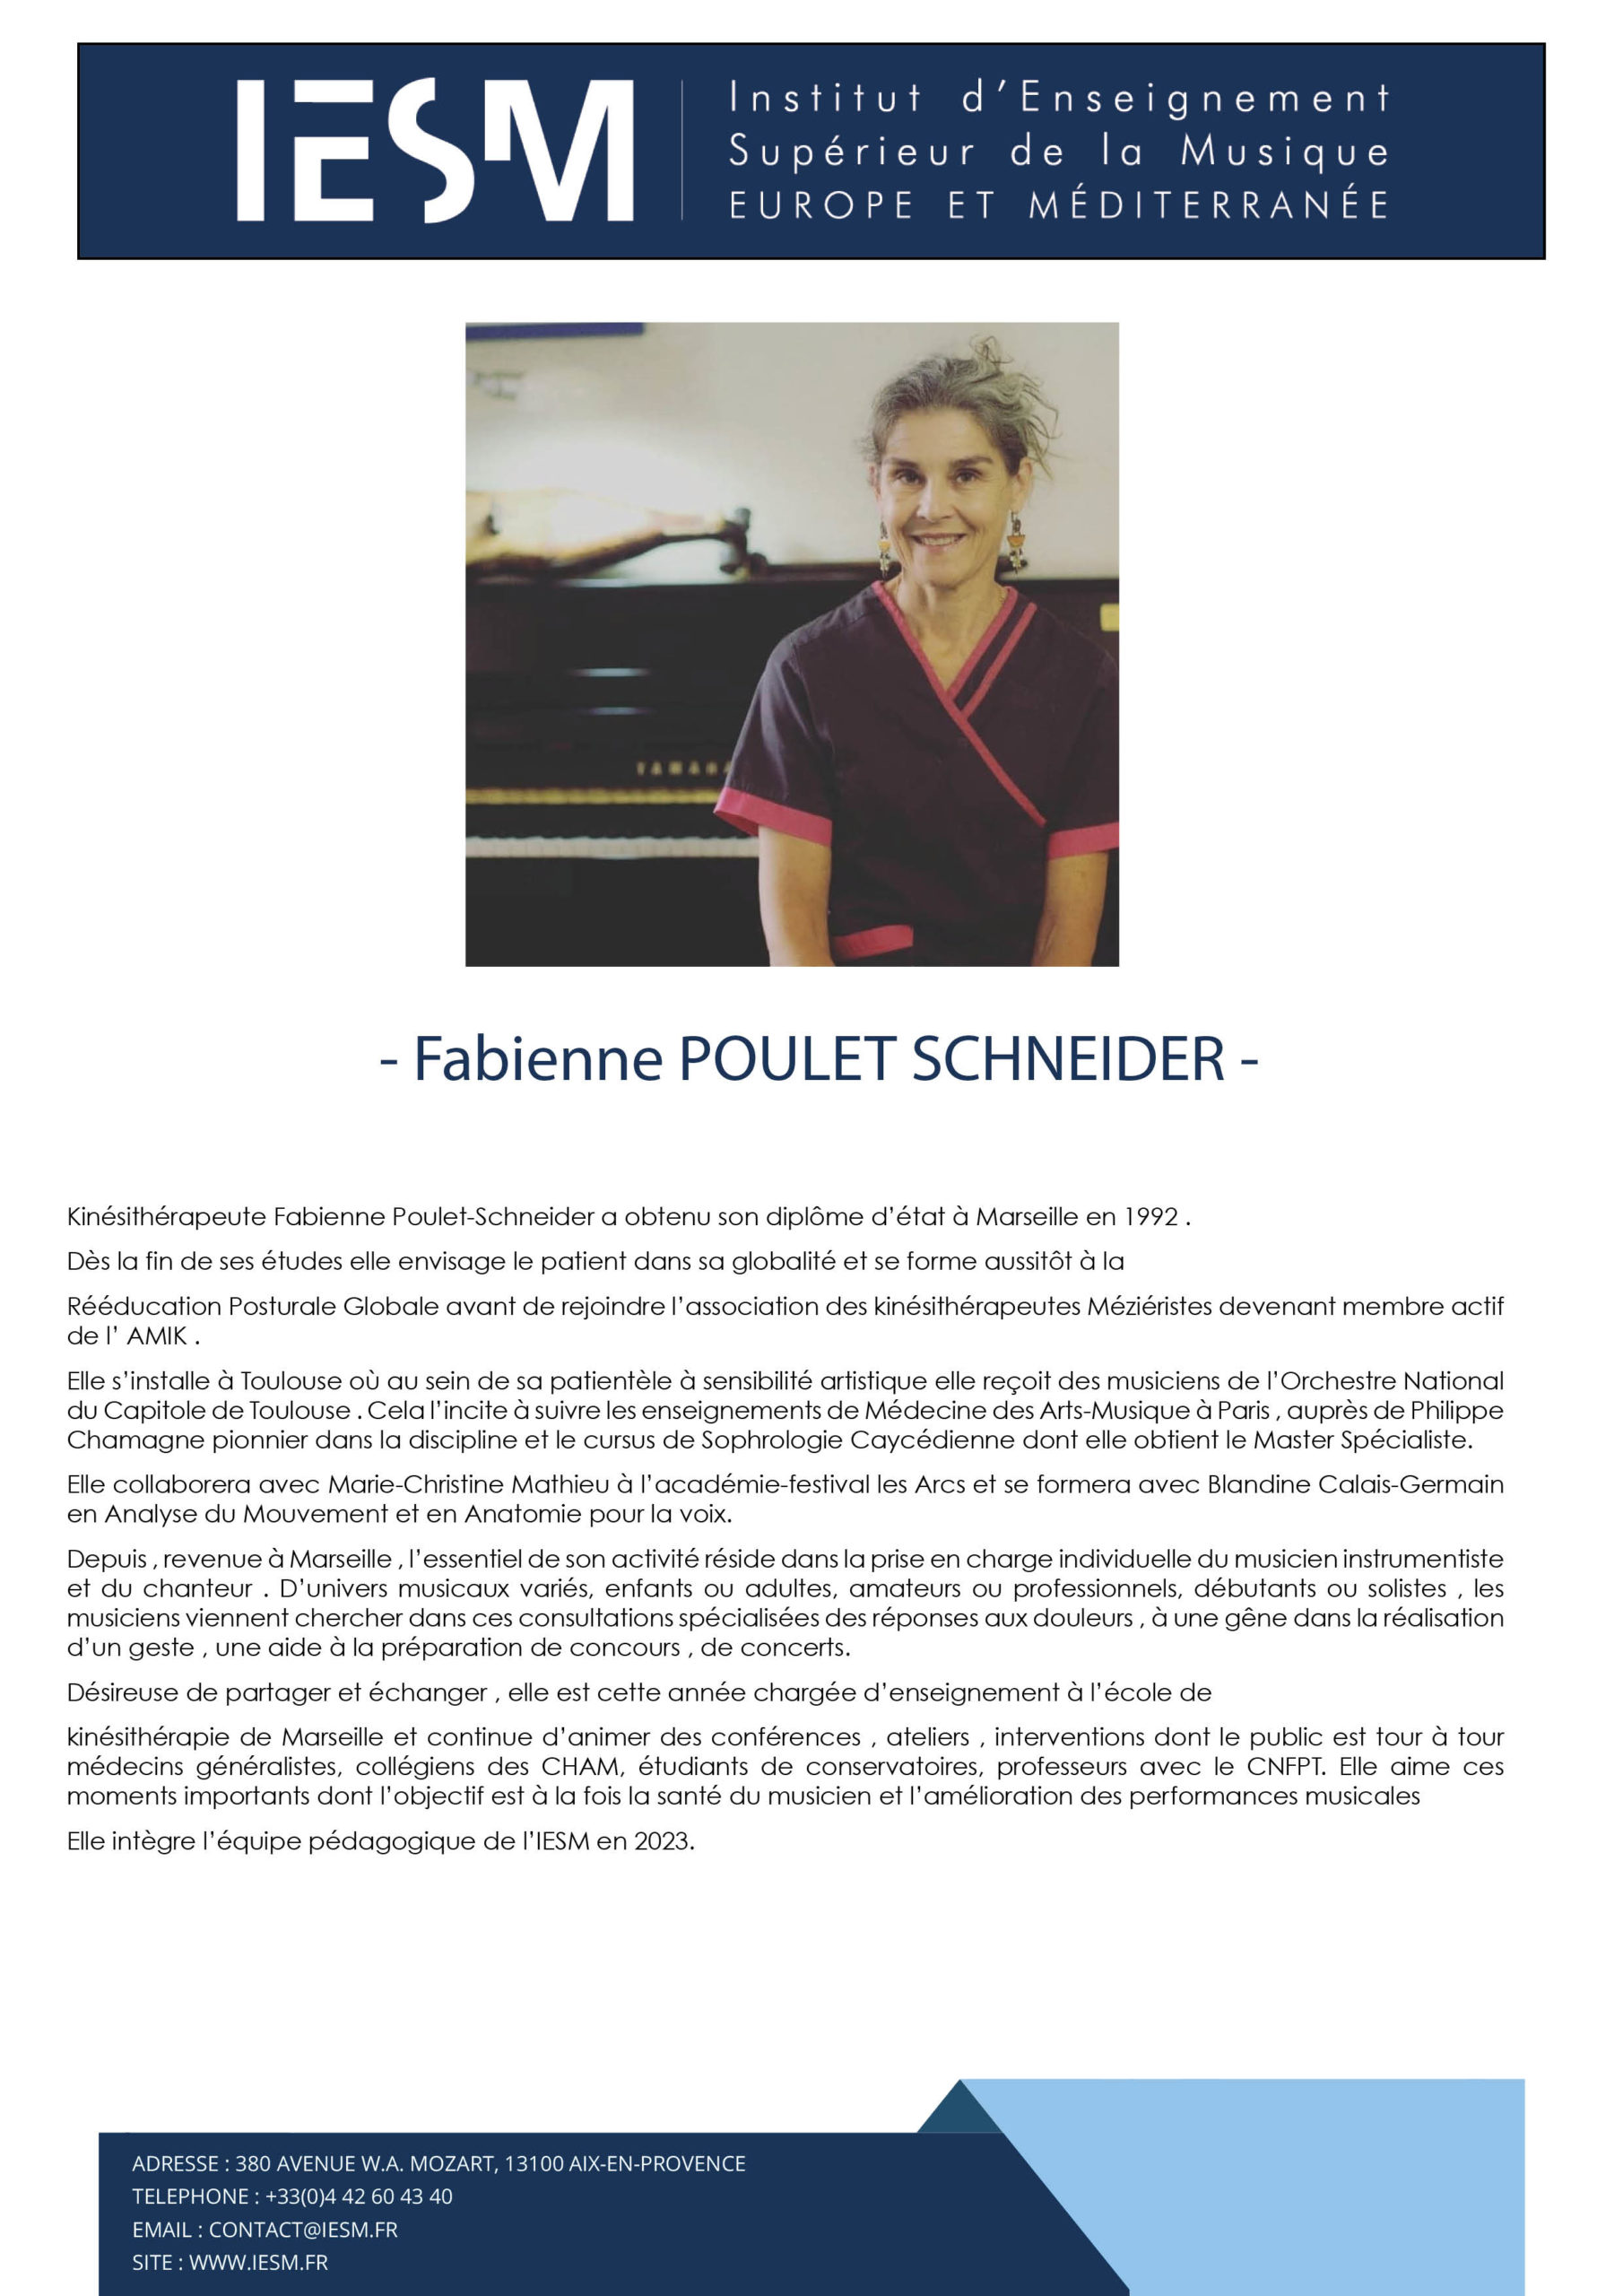 Bio POULET SCHNEIDER Fabienne scaled